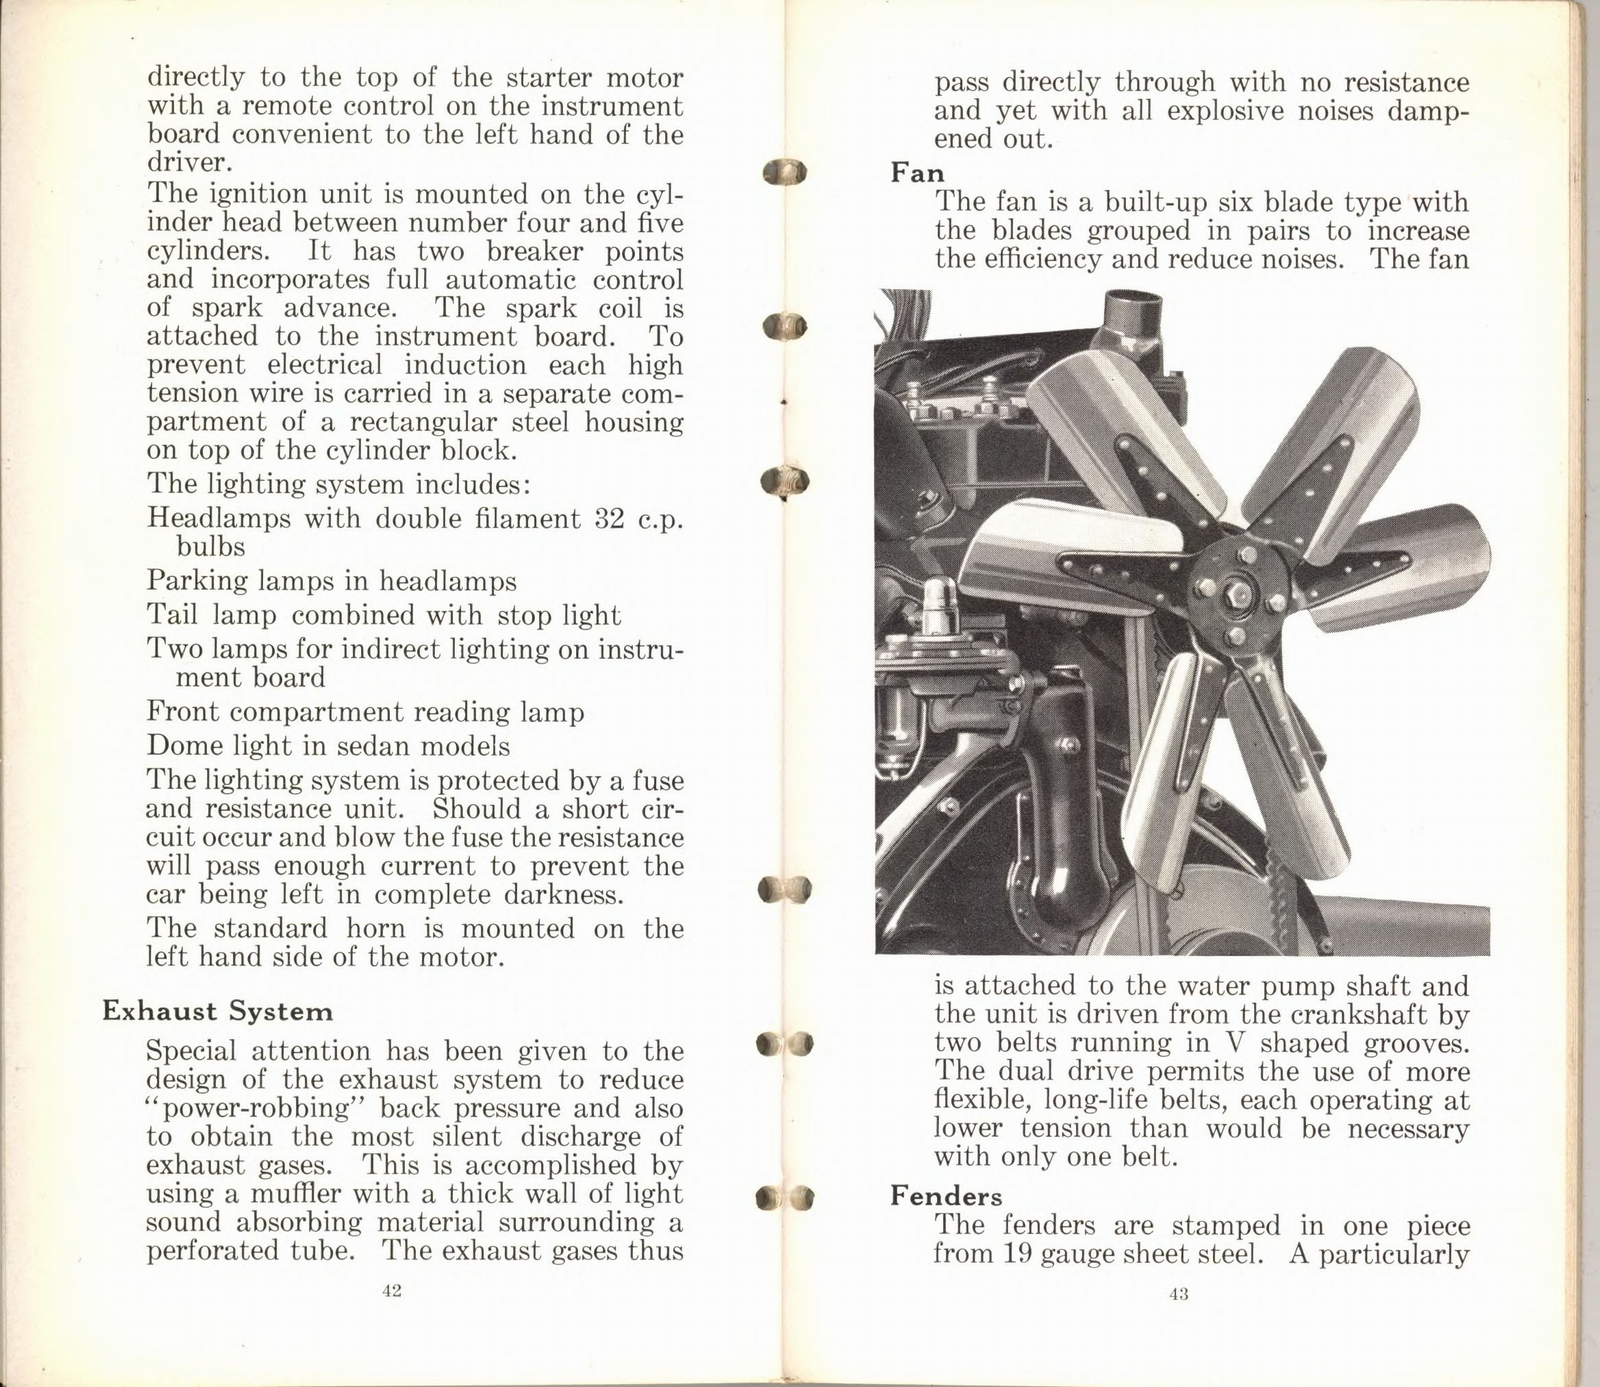 n_1932 Packard Light Eight Facts Book-42-43.jpg